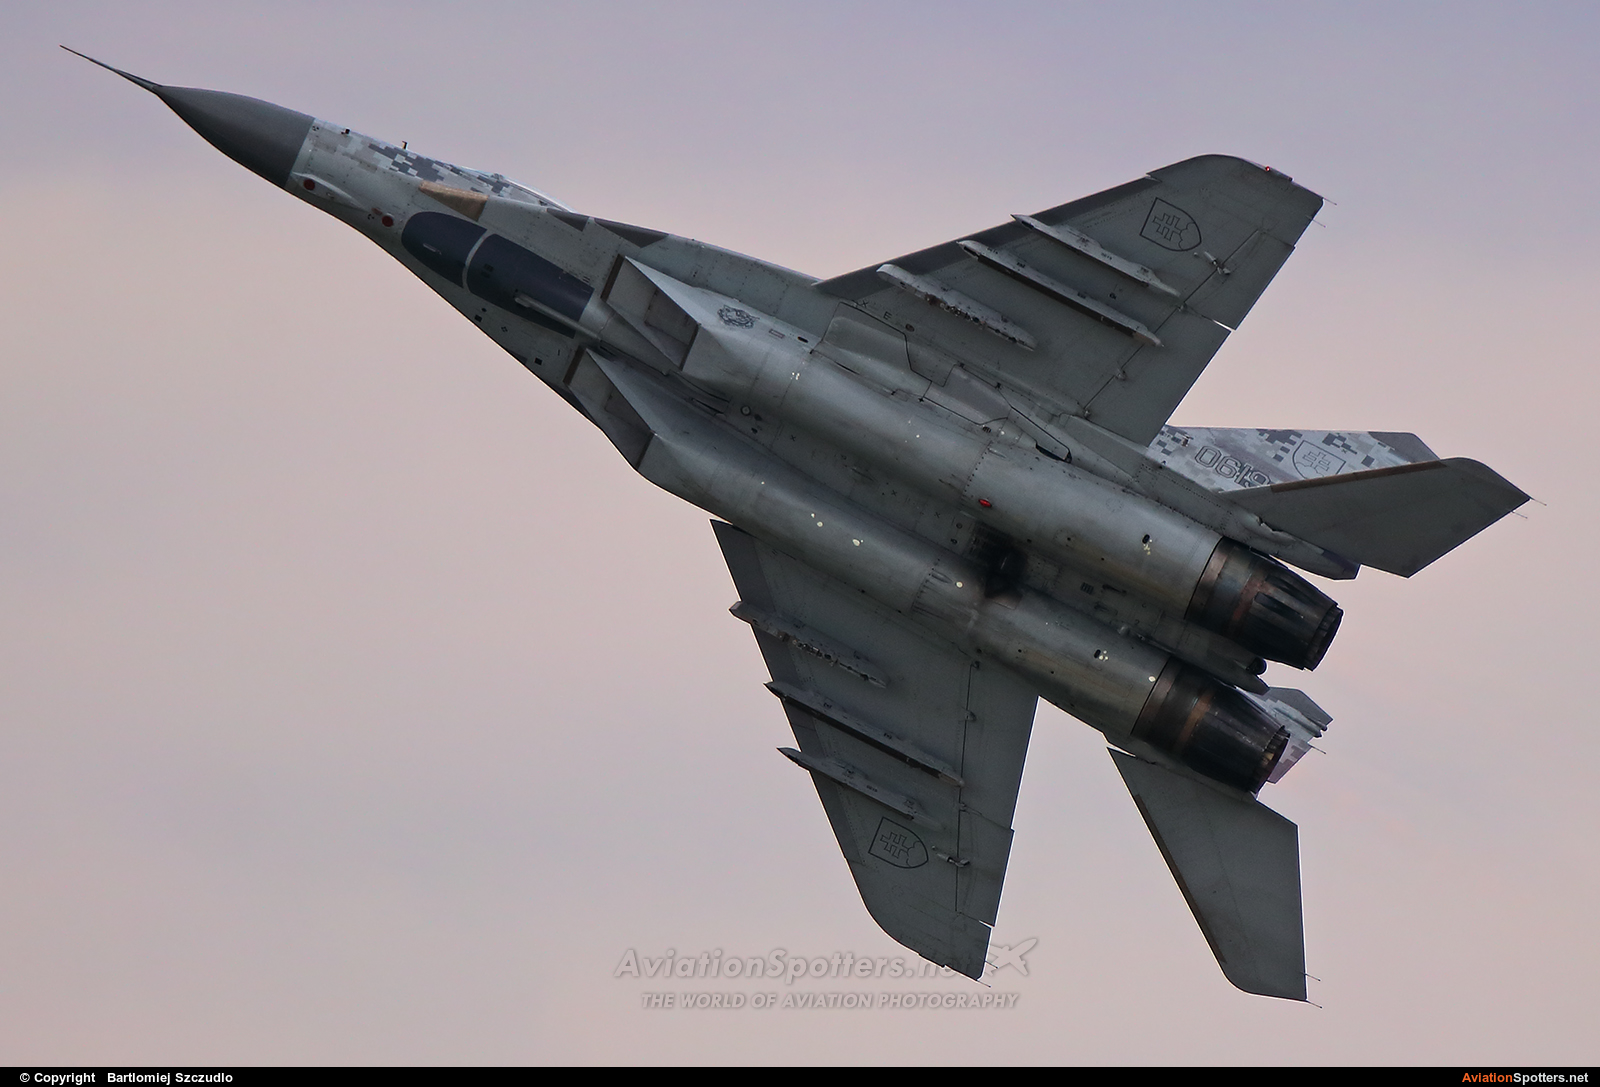   MiG-29AS  (0619) By Bartlomiej Szczudlo  (BartekSzczudlo)